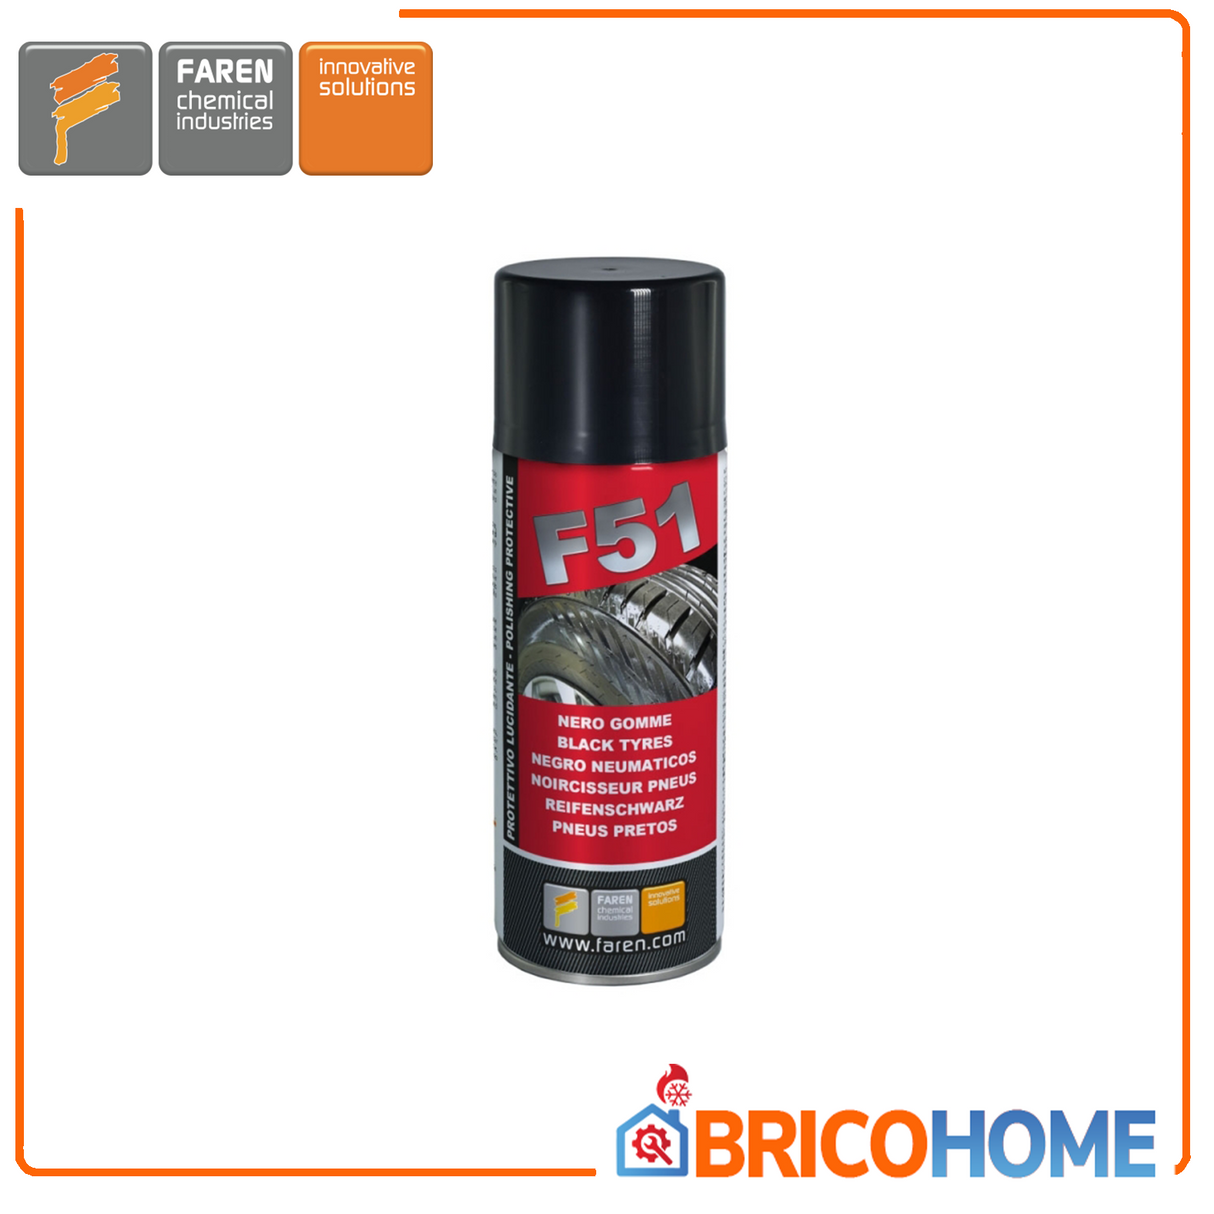 Black rubber reviver spray 400ml F51 FAREN